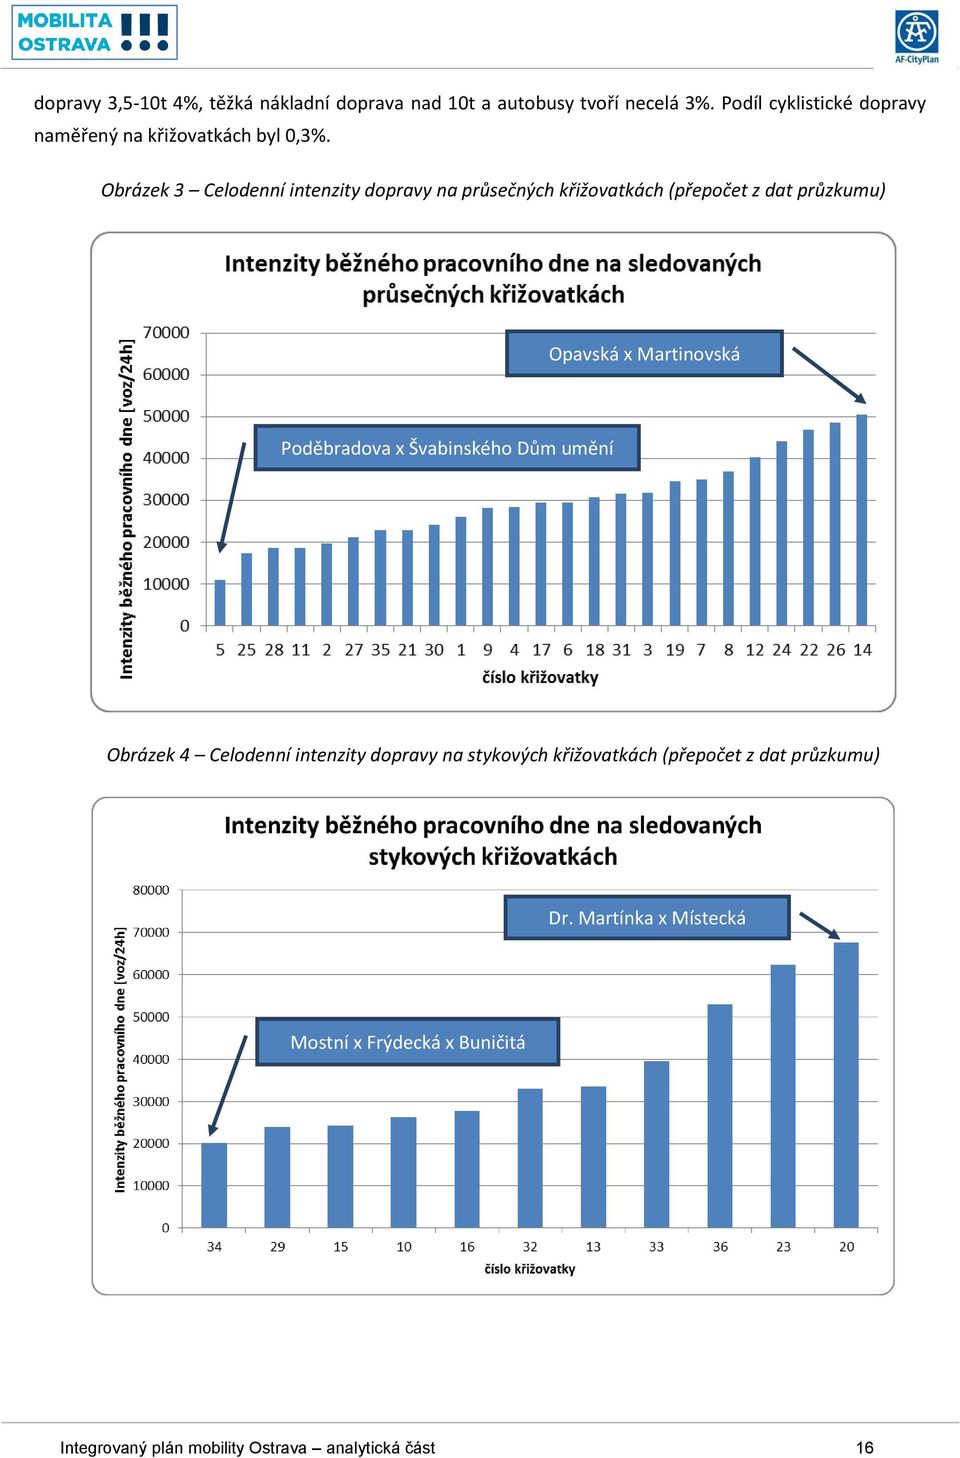 Obrázek 3 Celodenní intenzity dopravy na průsečných křižovatkách (přepočet z dat průzkumu) Opavská x Martinovská